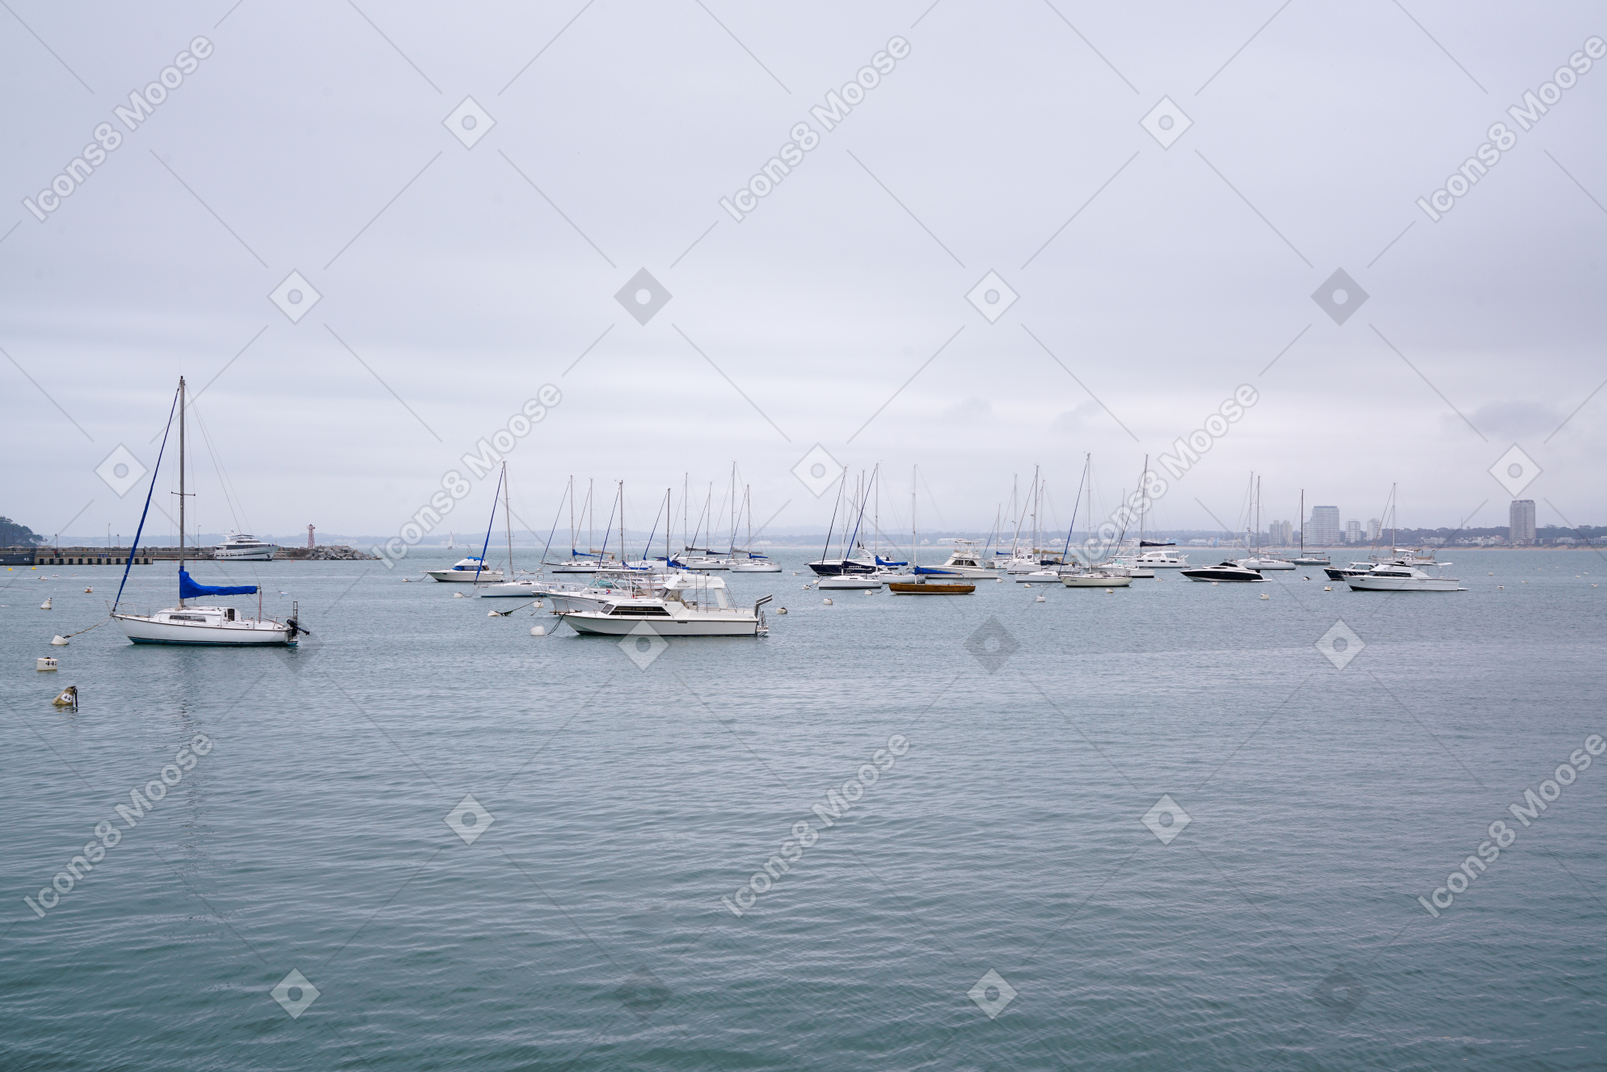 Mar nebuloso e pic navios estacionados